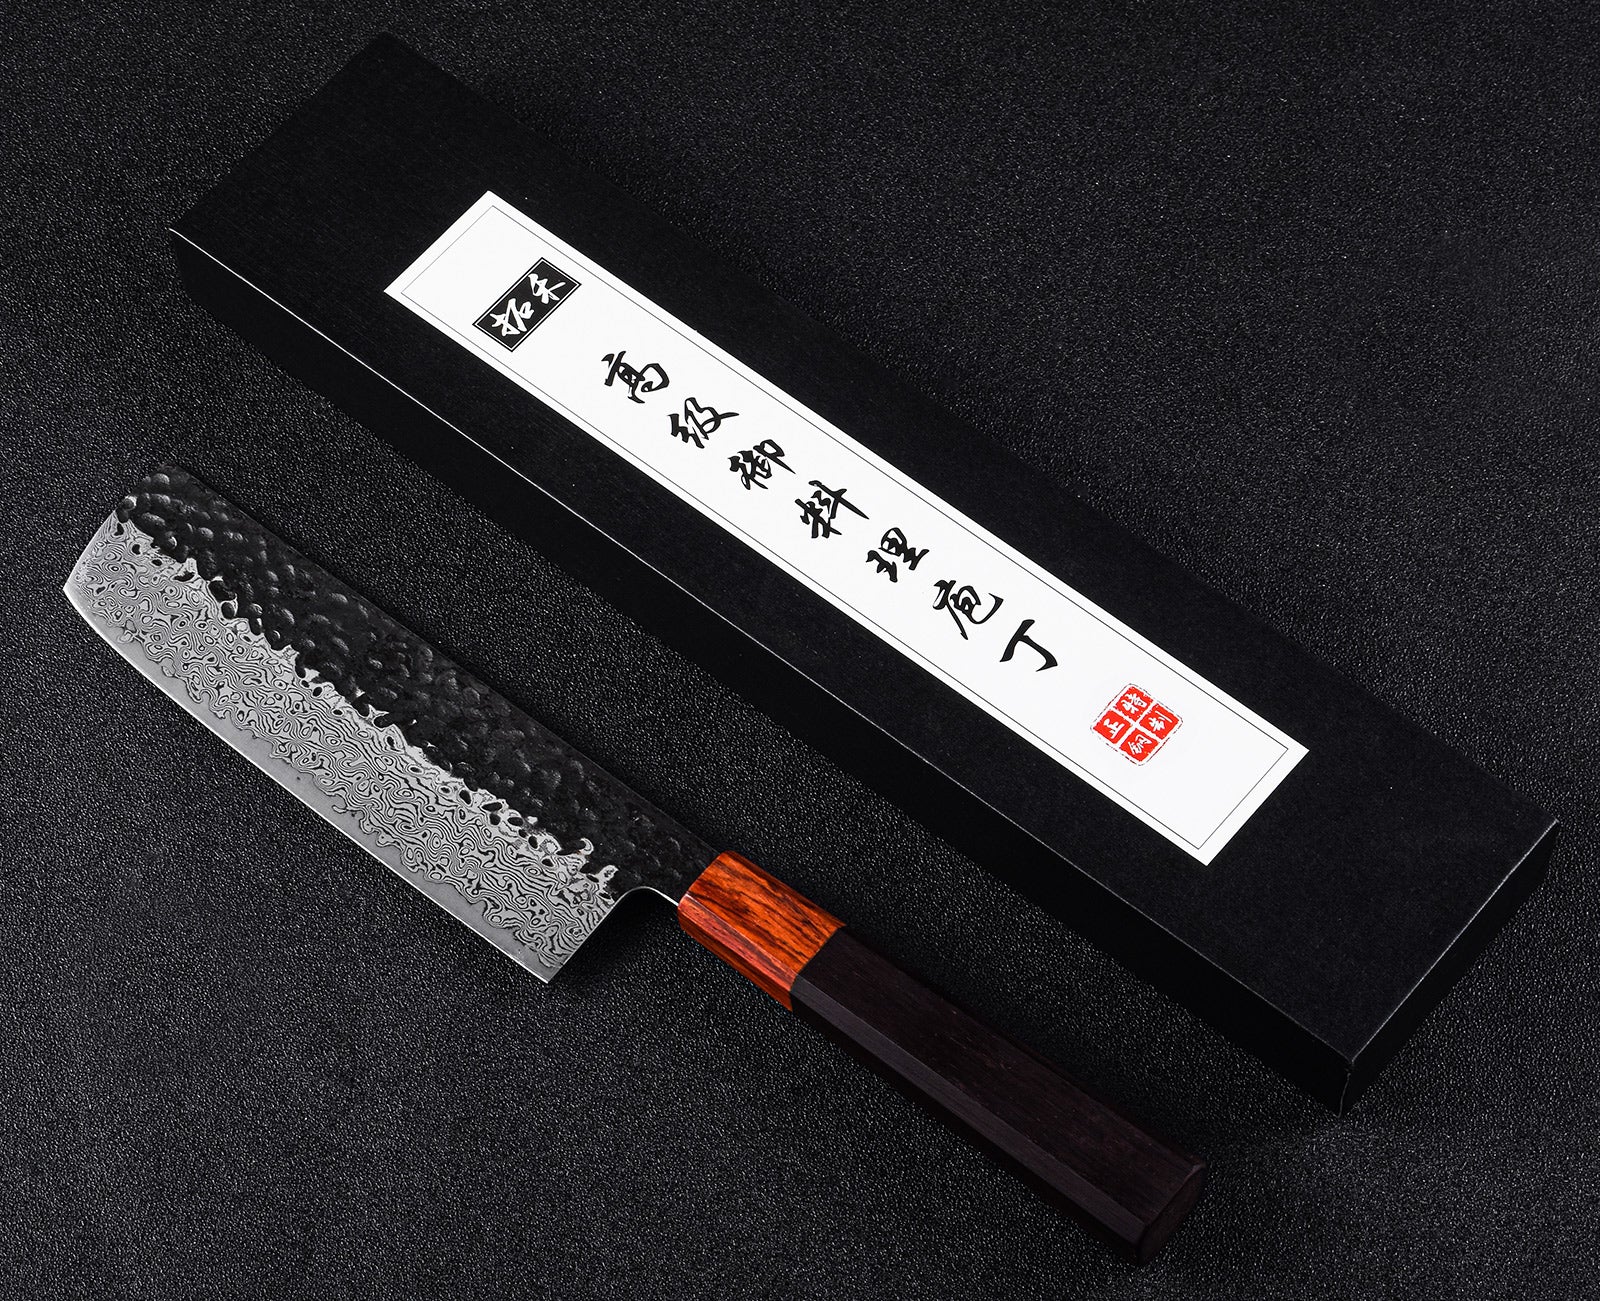 https://cdn.shopify.com/s/files/1/0017/6632/6345/files/Best_Japanese_Nakiri_Knife.jpg?v=1594091314